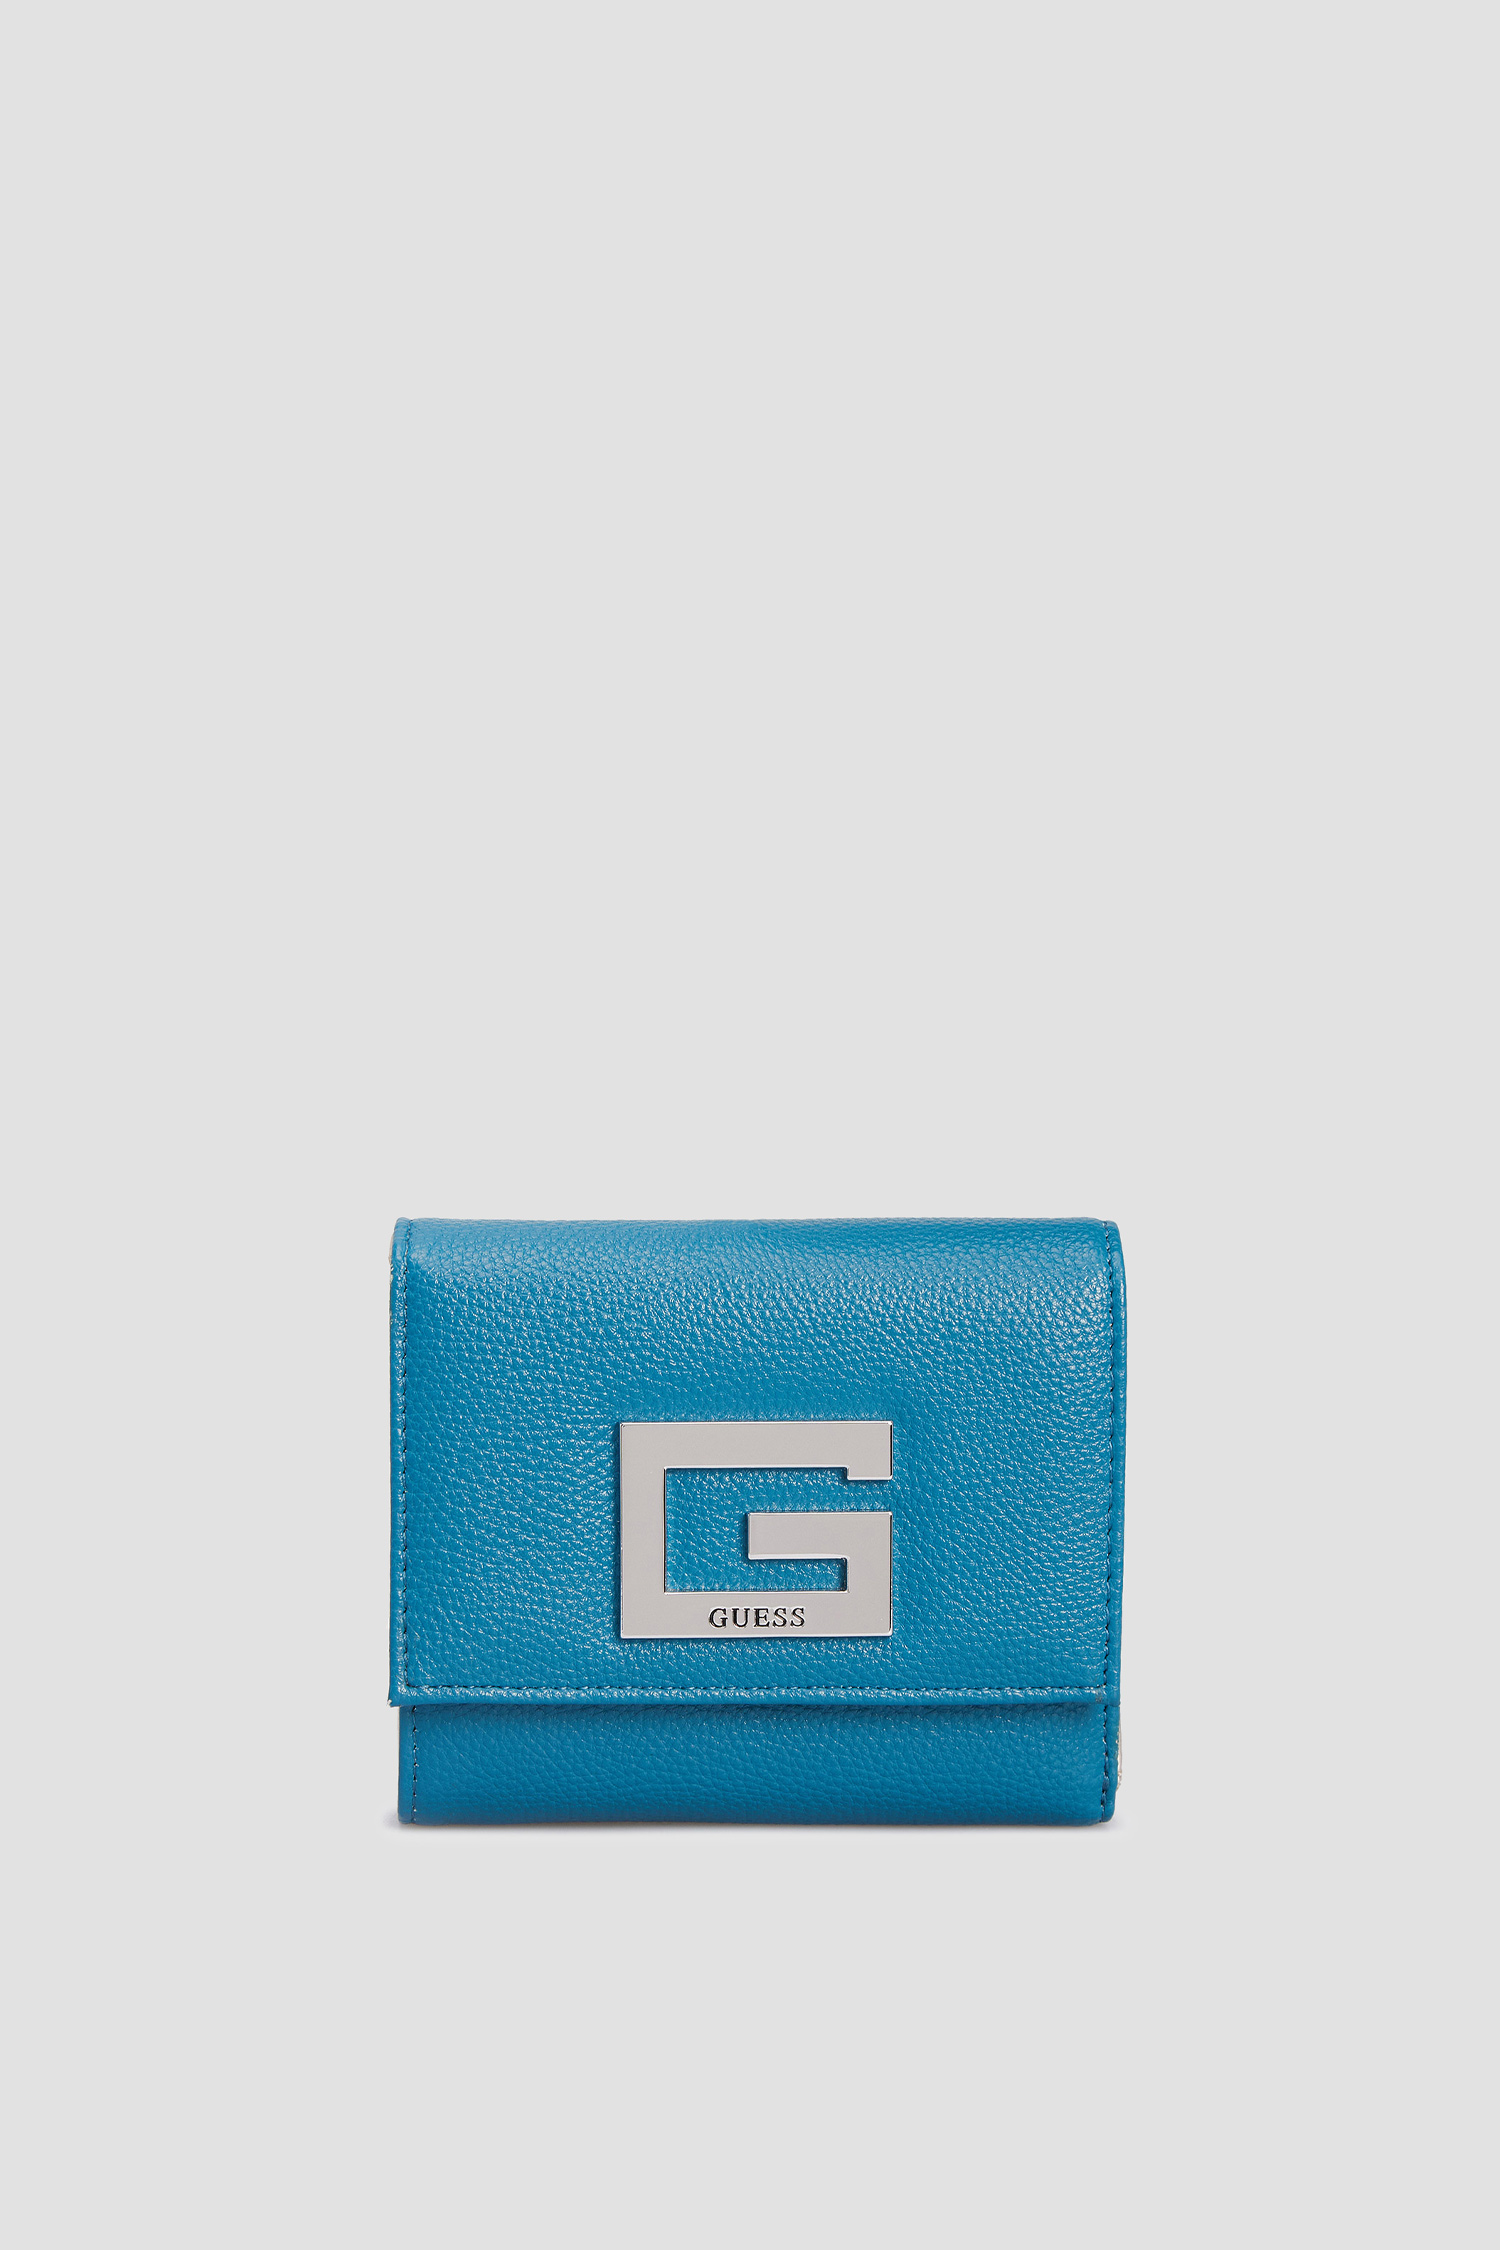 Жіночий бірюзовий гаманець Guess SWAY75.80430;PAC